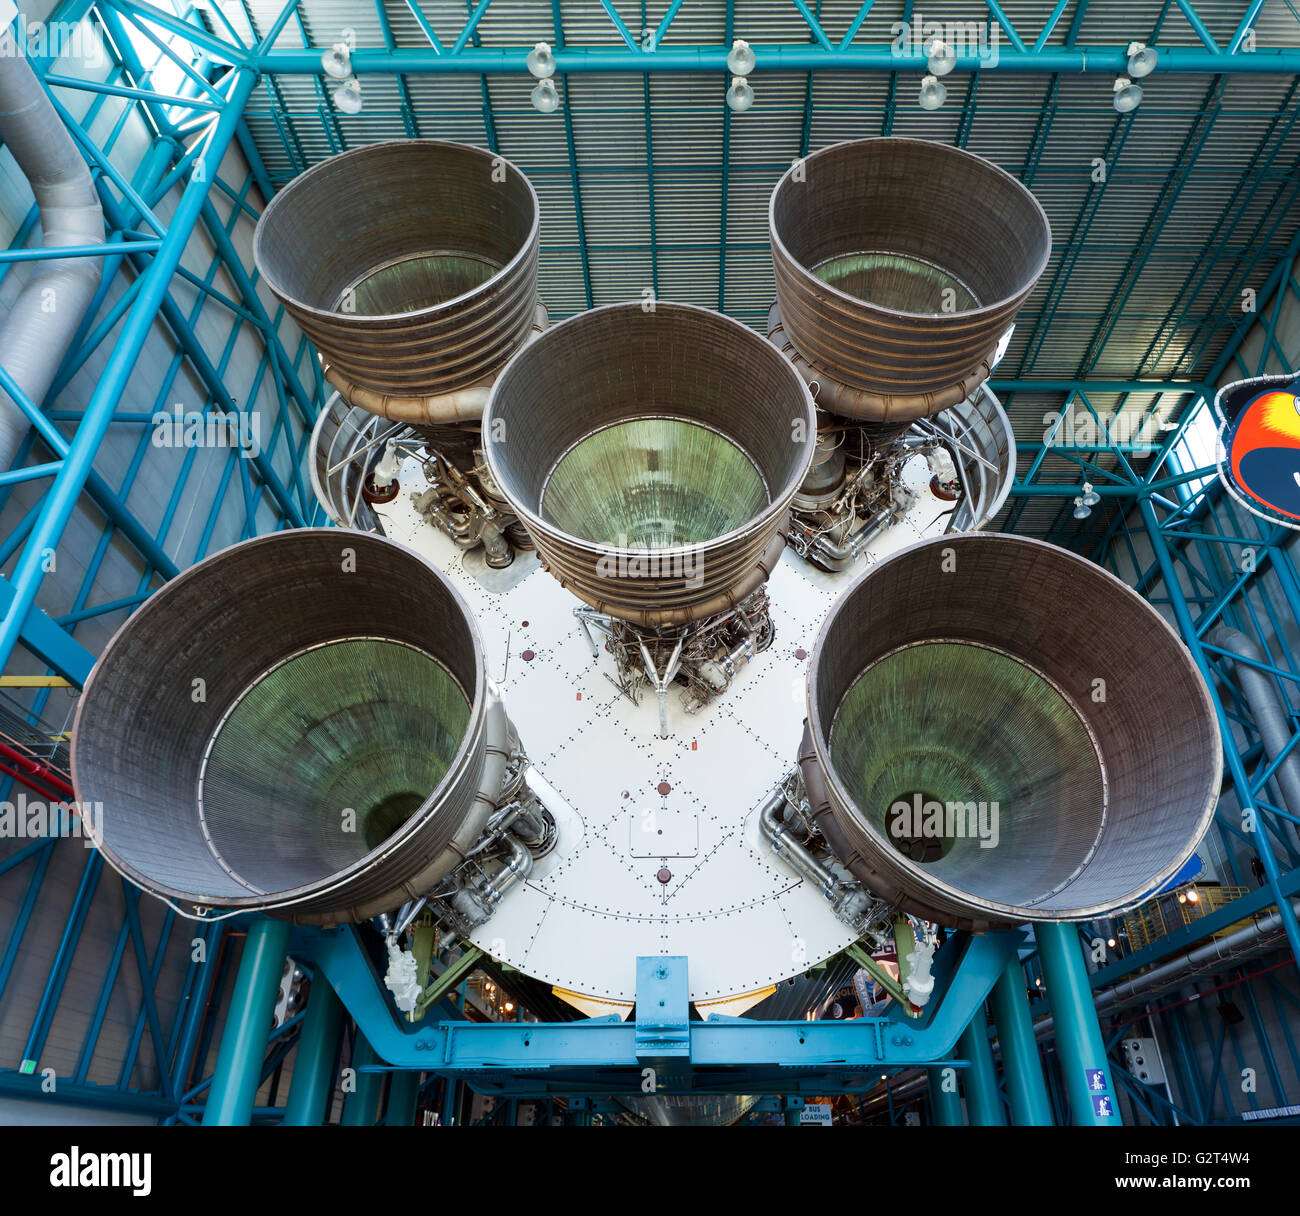 Les moteurs fusée géante sur la première étape de la Fusée Saturn V, qui a été utilisé dans le programme Apollo de prendre des hommes sur la lune. Banque D'Images